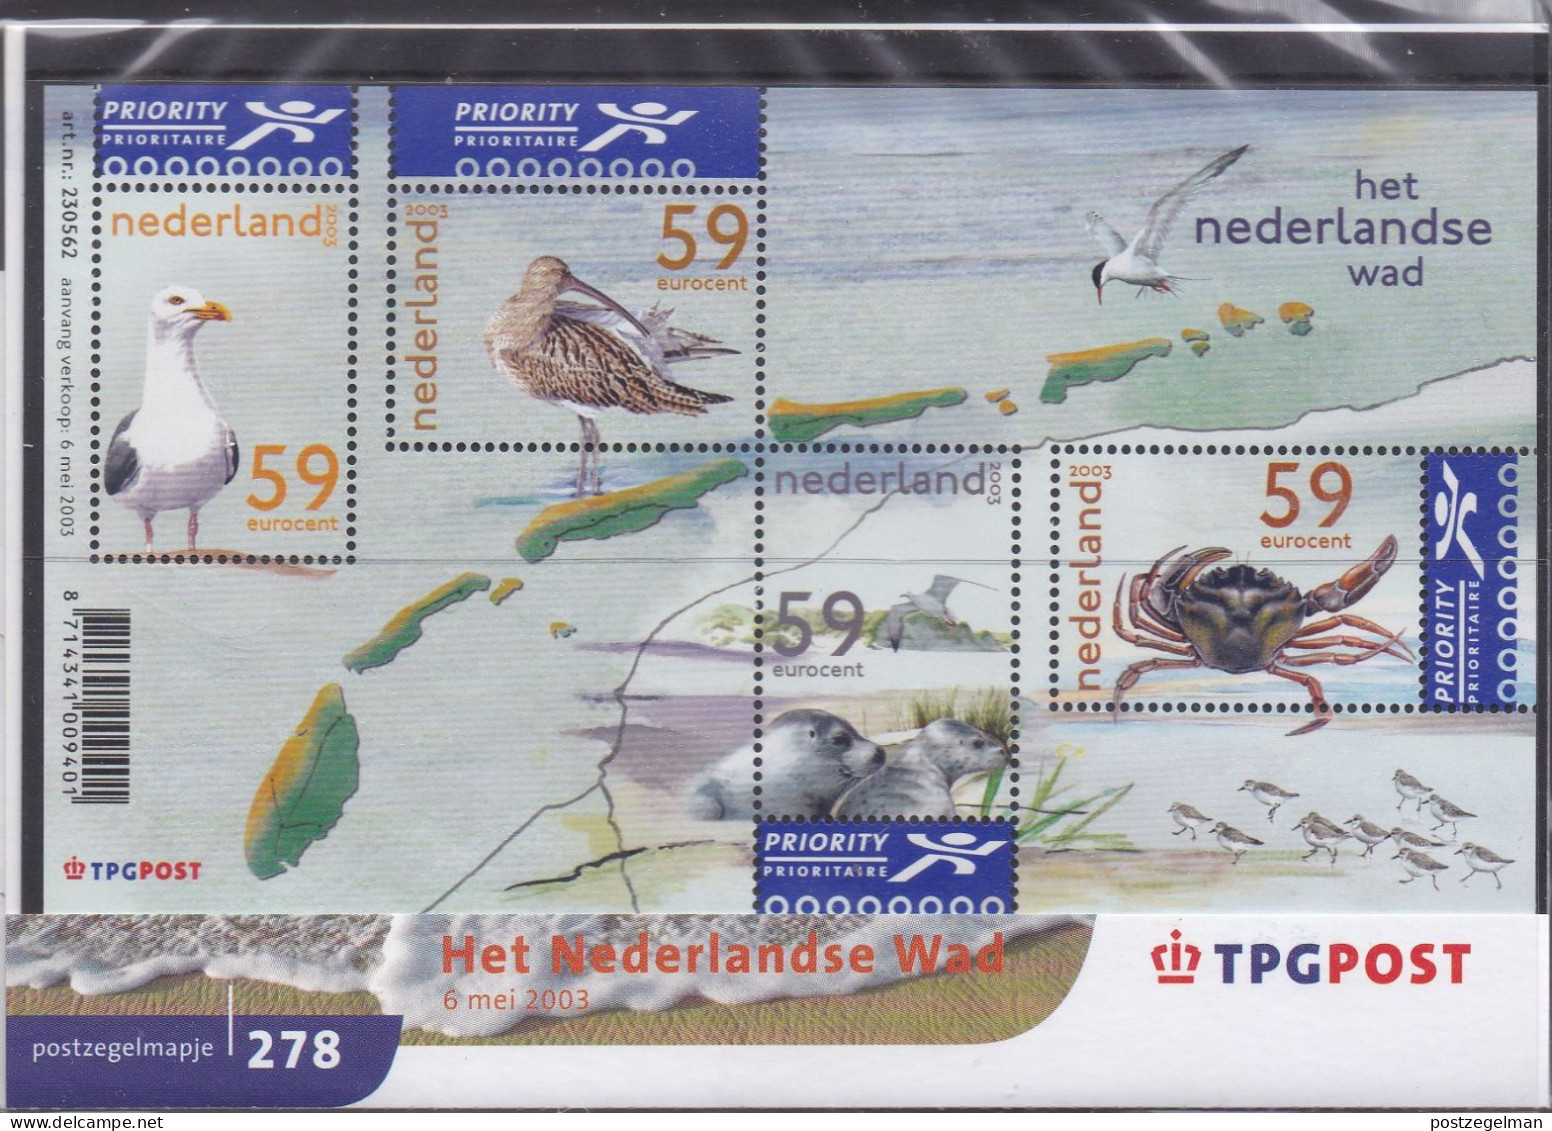 NEDERLAND, 2003, MNH Zegels In Mapje, Nederlandse Wad , NVPH Nrs. 2171, Scannr. M278 - Nuovi